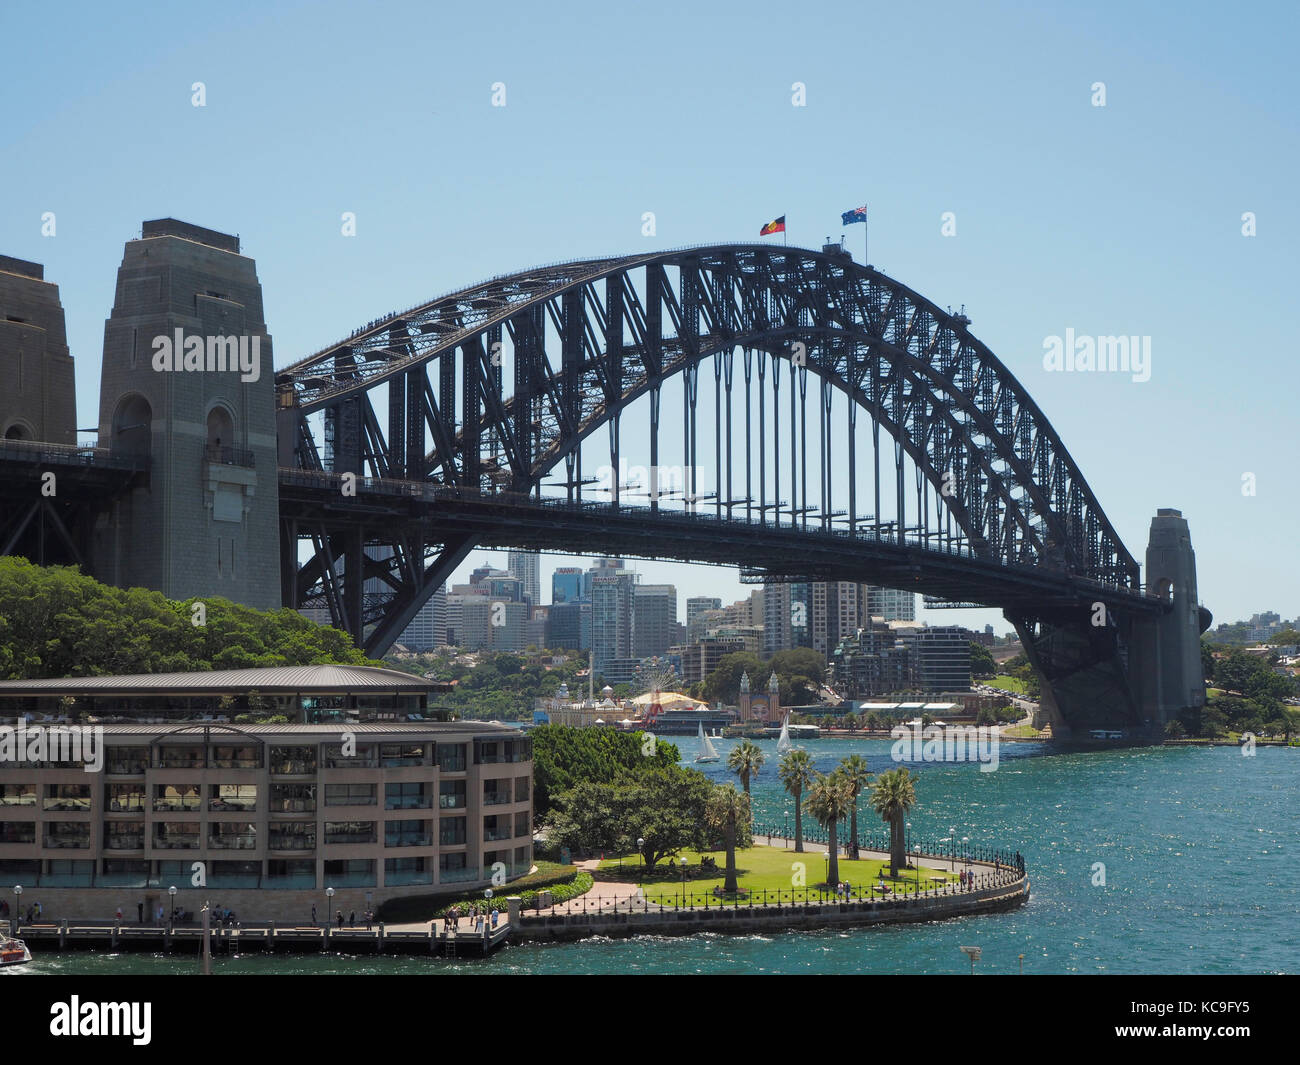 Sydney Habour Bridge in Australia. Stock Photo